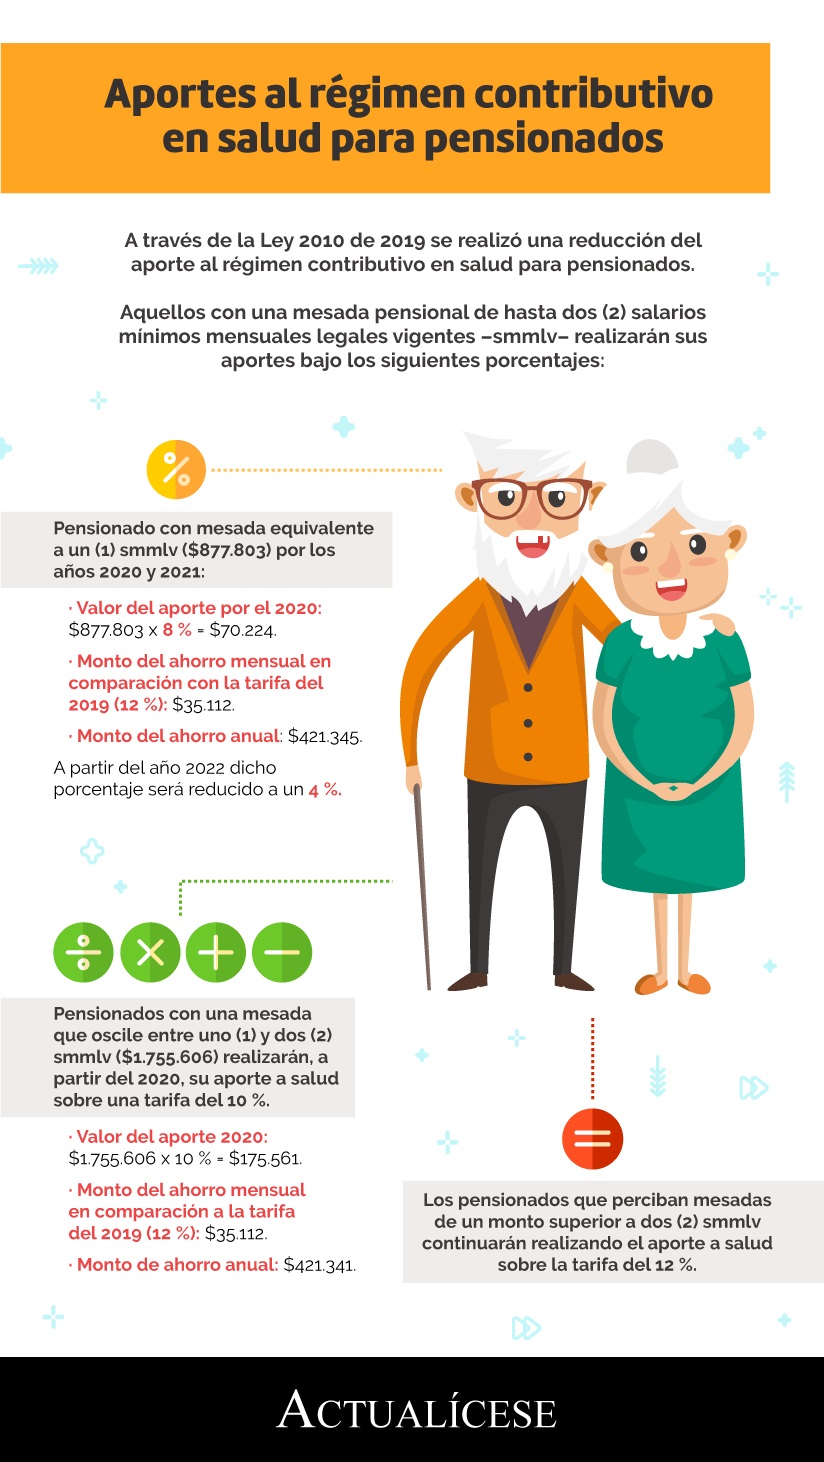 [Infografía] Aportes al régimen contributivo en salud para pensionados